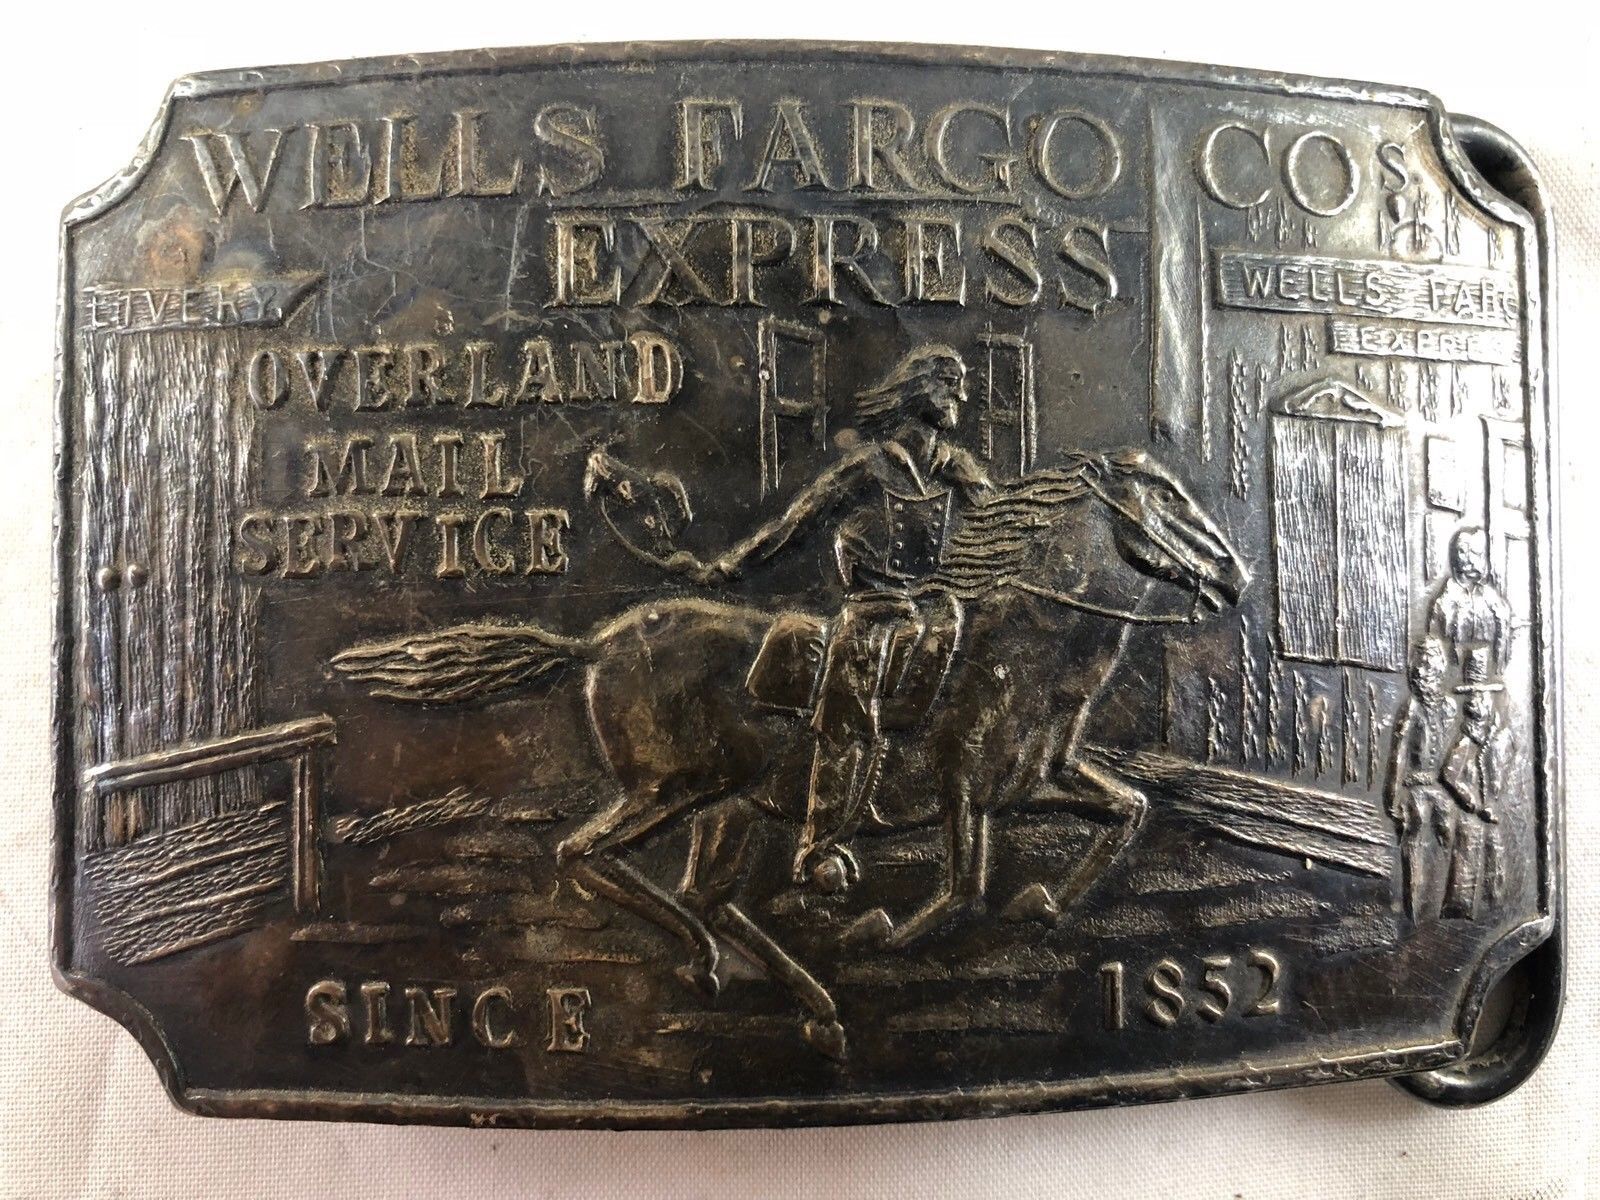 Tiffany & Company Wells Fargo Company Express Overland Mail Service ...